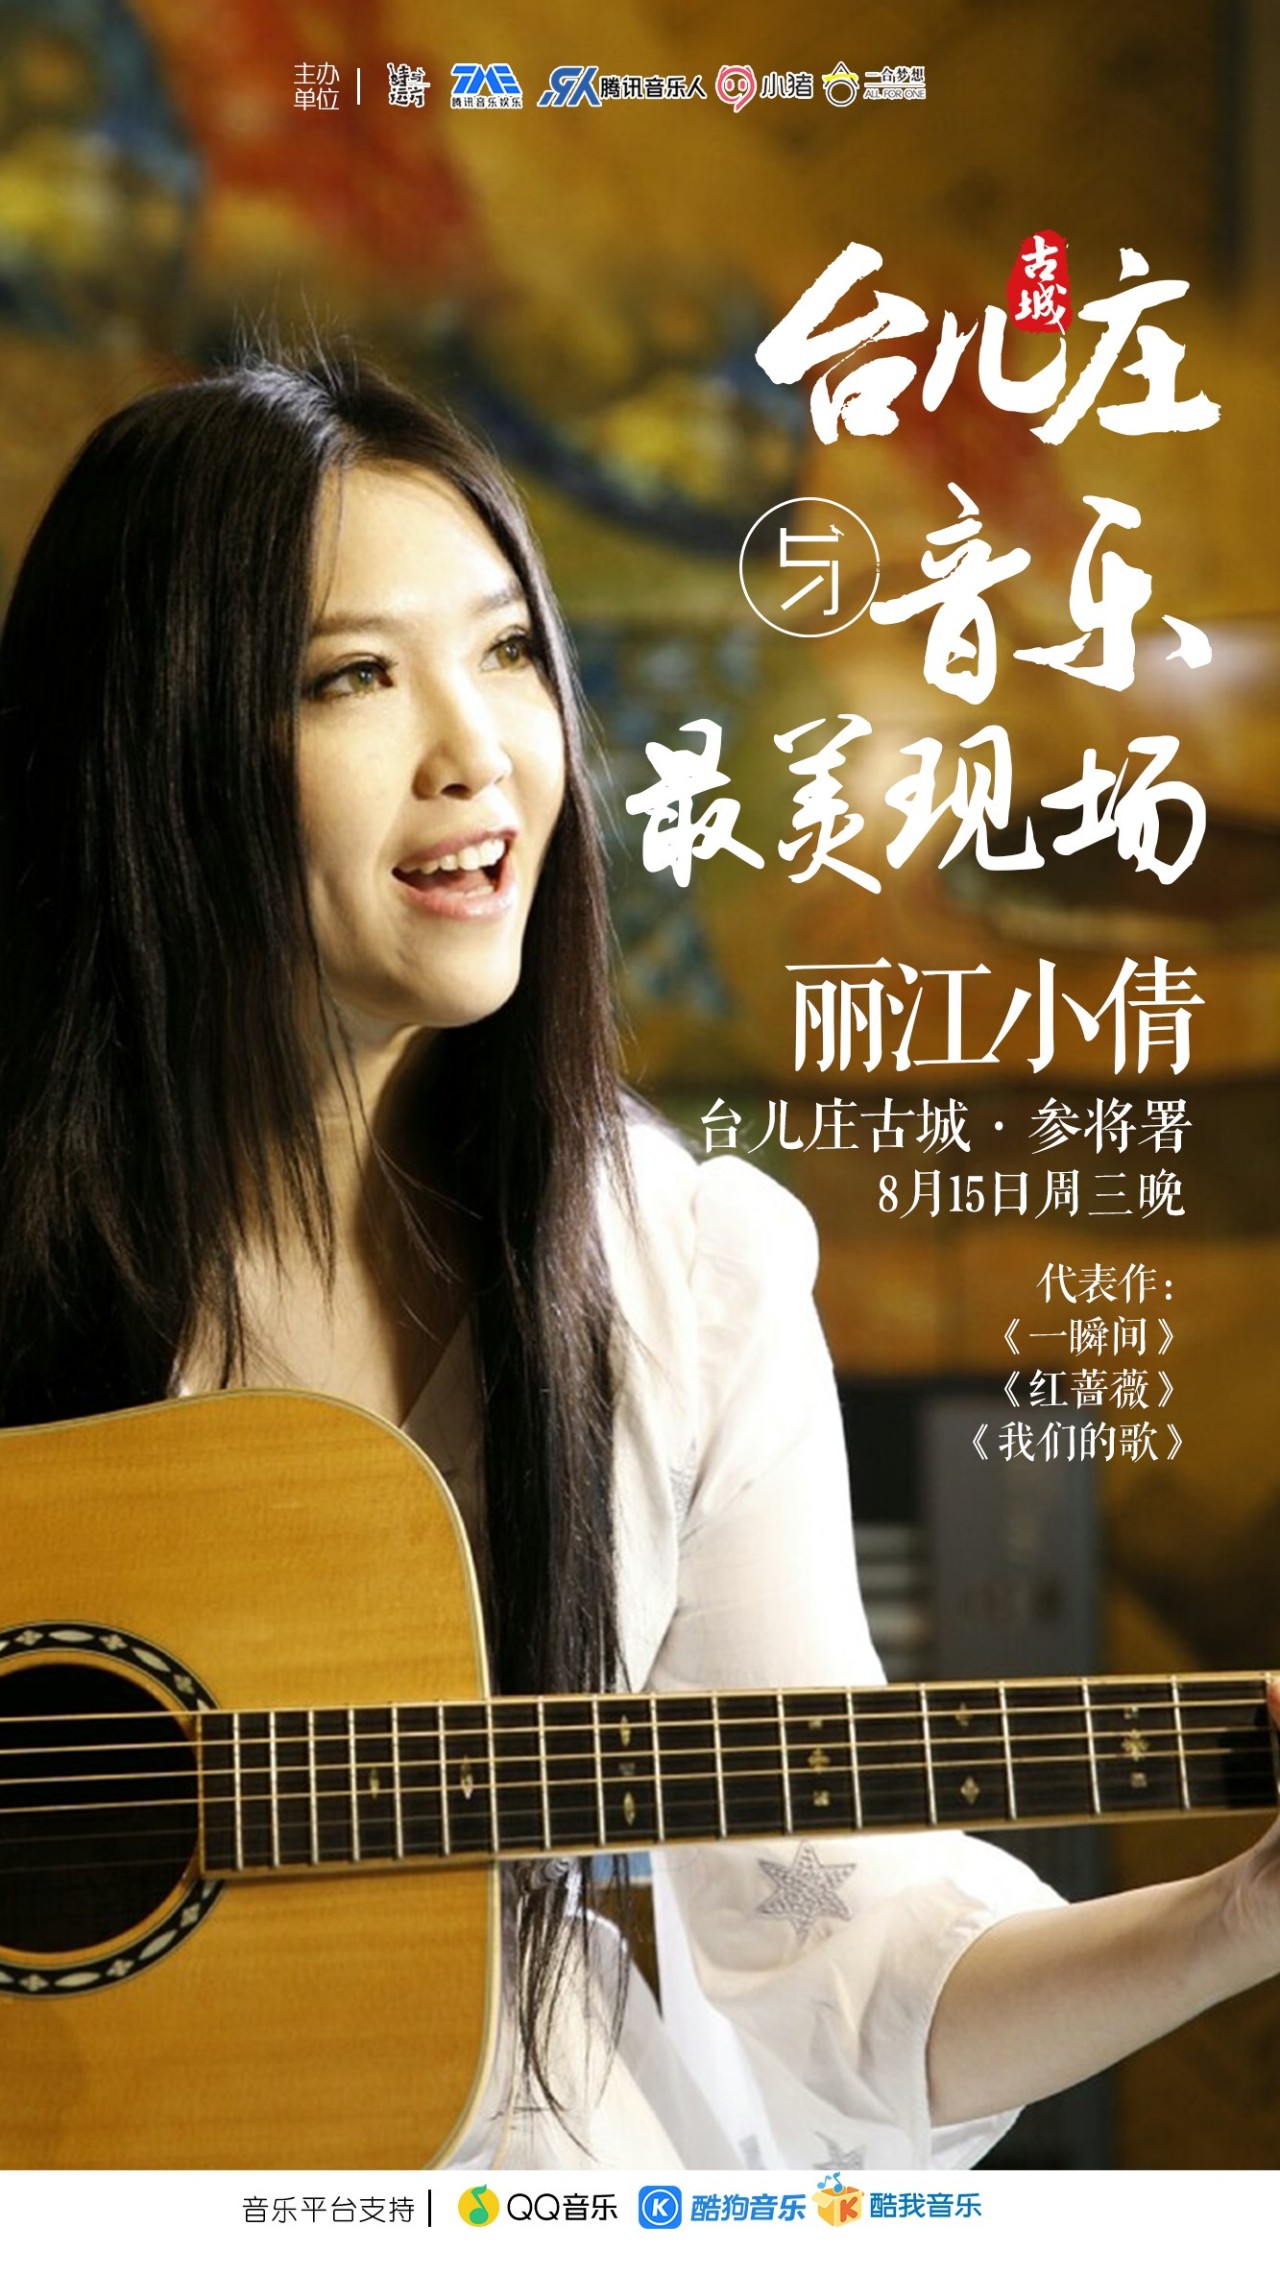 8月15日,唱《一瞬间》的知名歌手丽江小倩要来台儿庄古城了